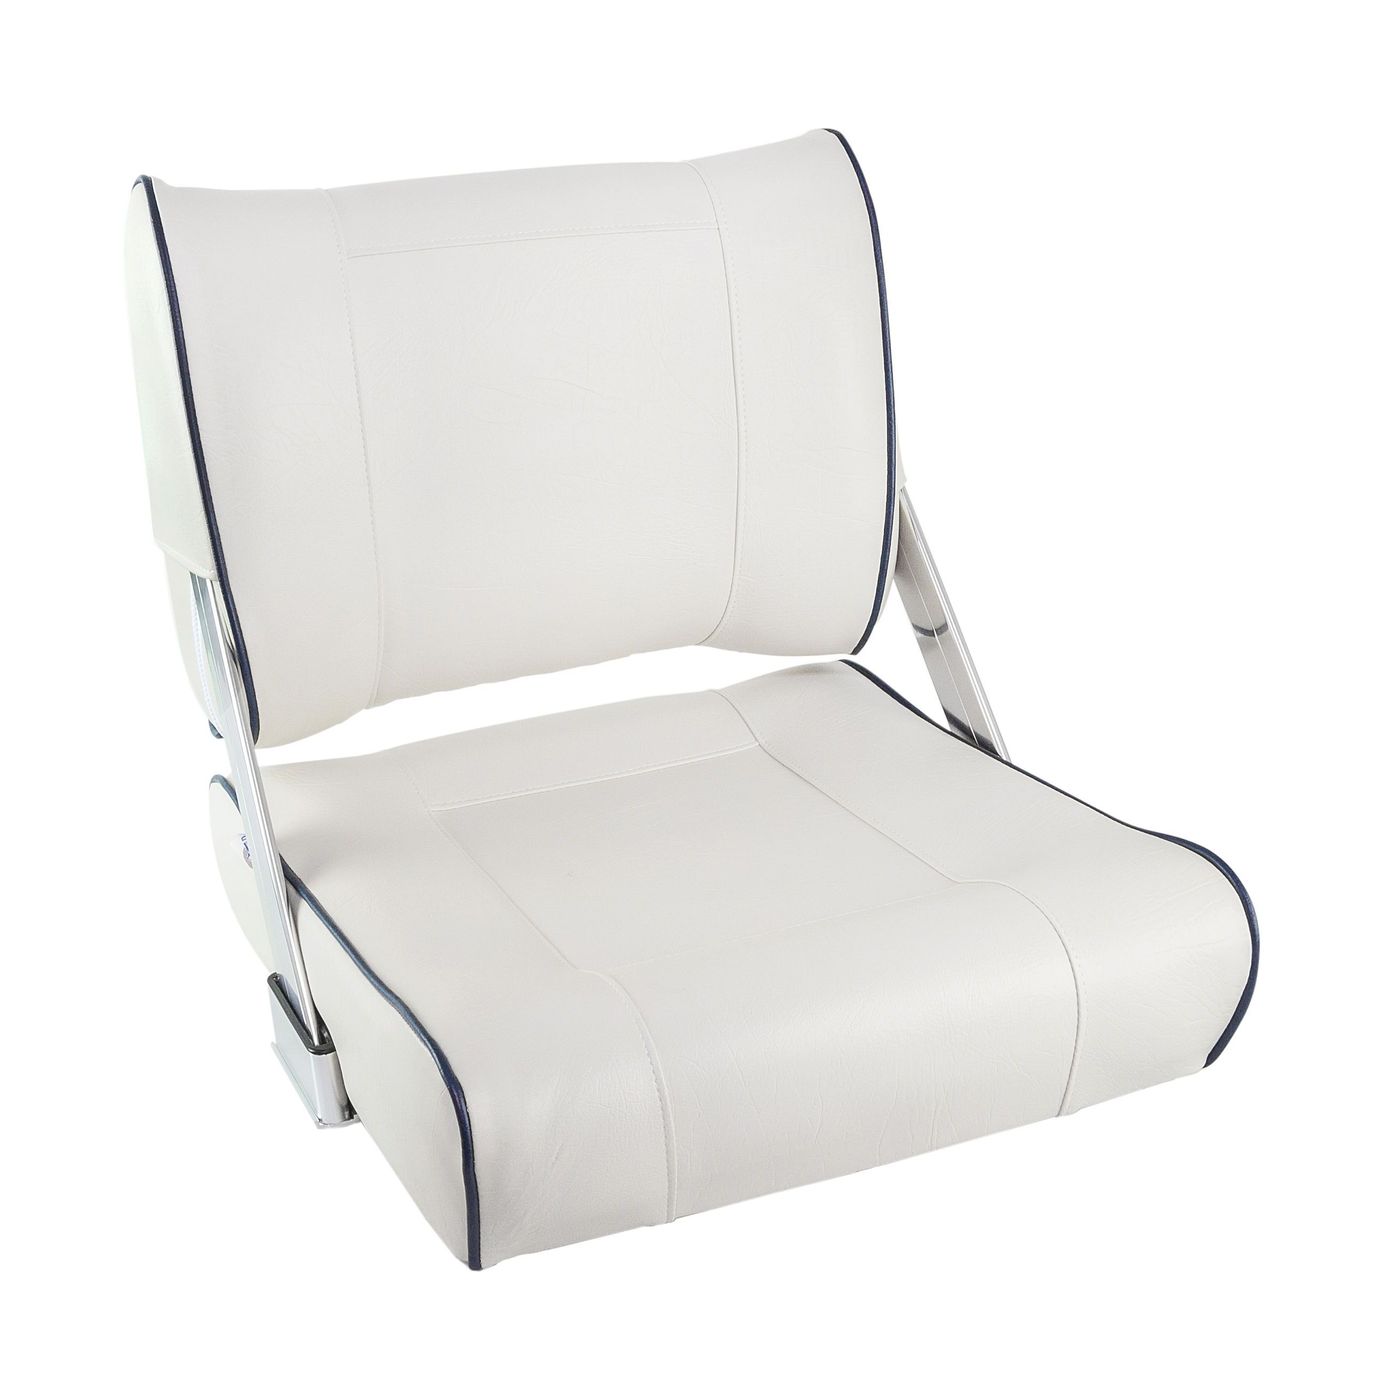 Кресло мягкое с перекидной спинкой белого цвета и синим кантом 1042048 кресло admiral мягкое материал винил 1061420990